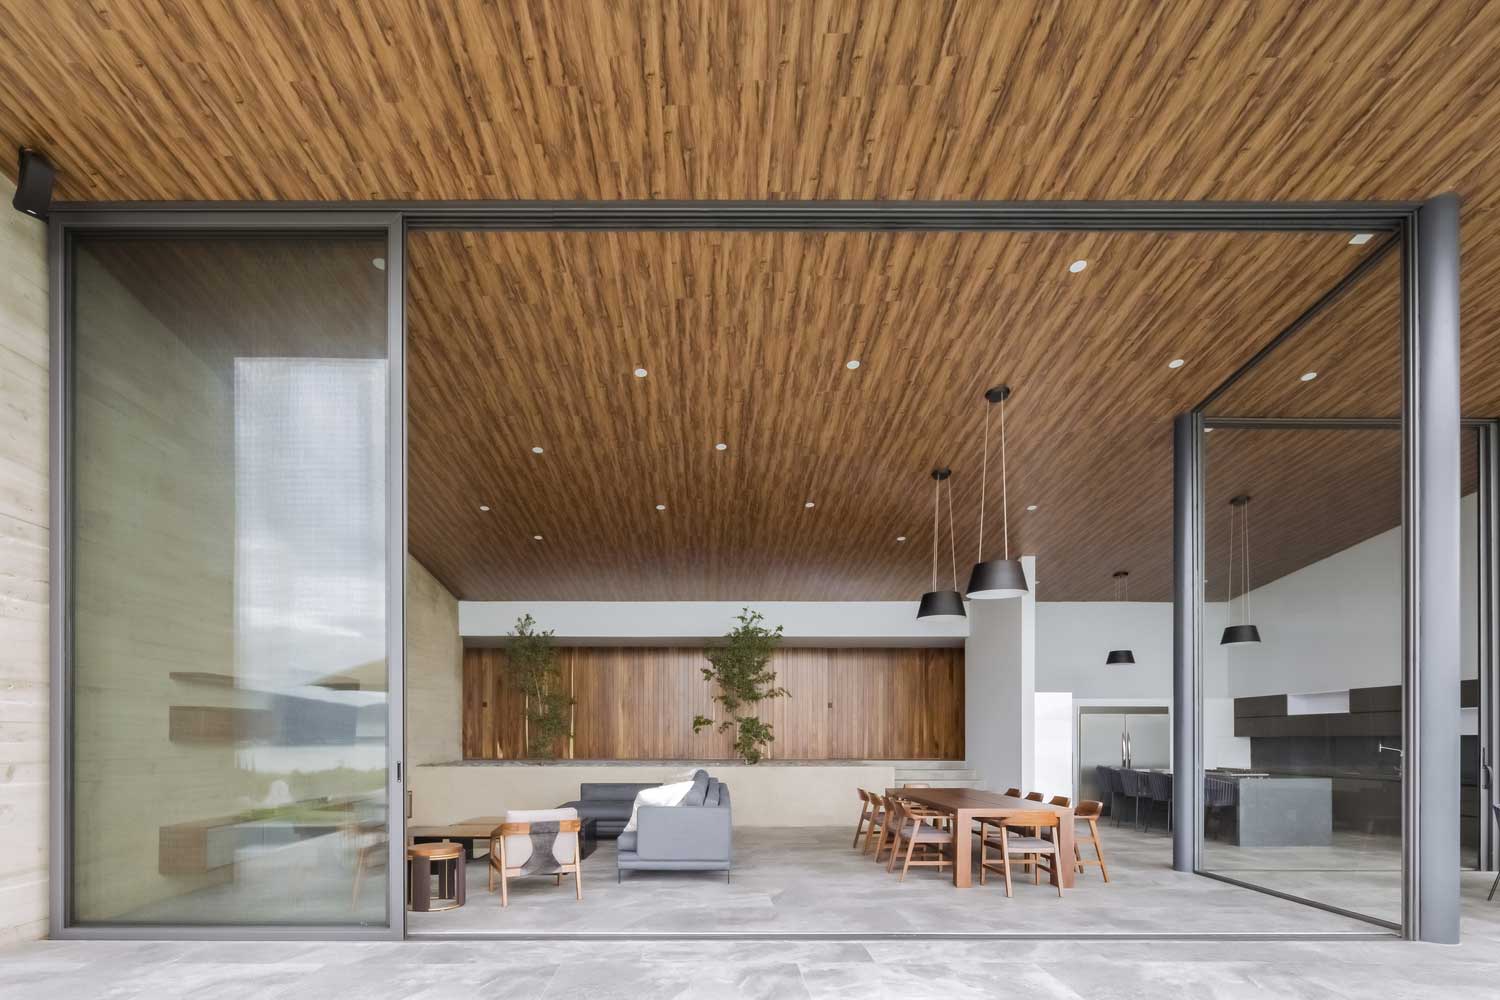 Idée de design moderne pour un plafond unique dans le salon et sur la terrasse